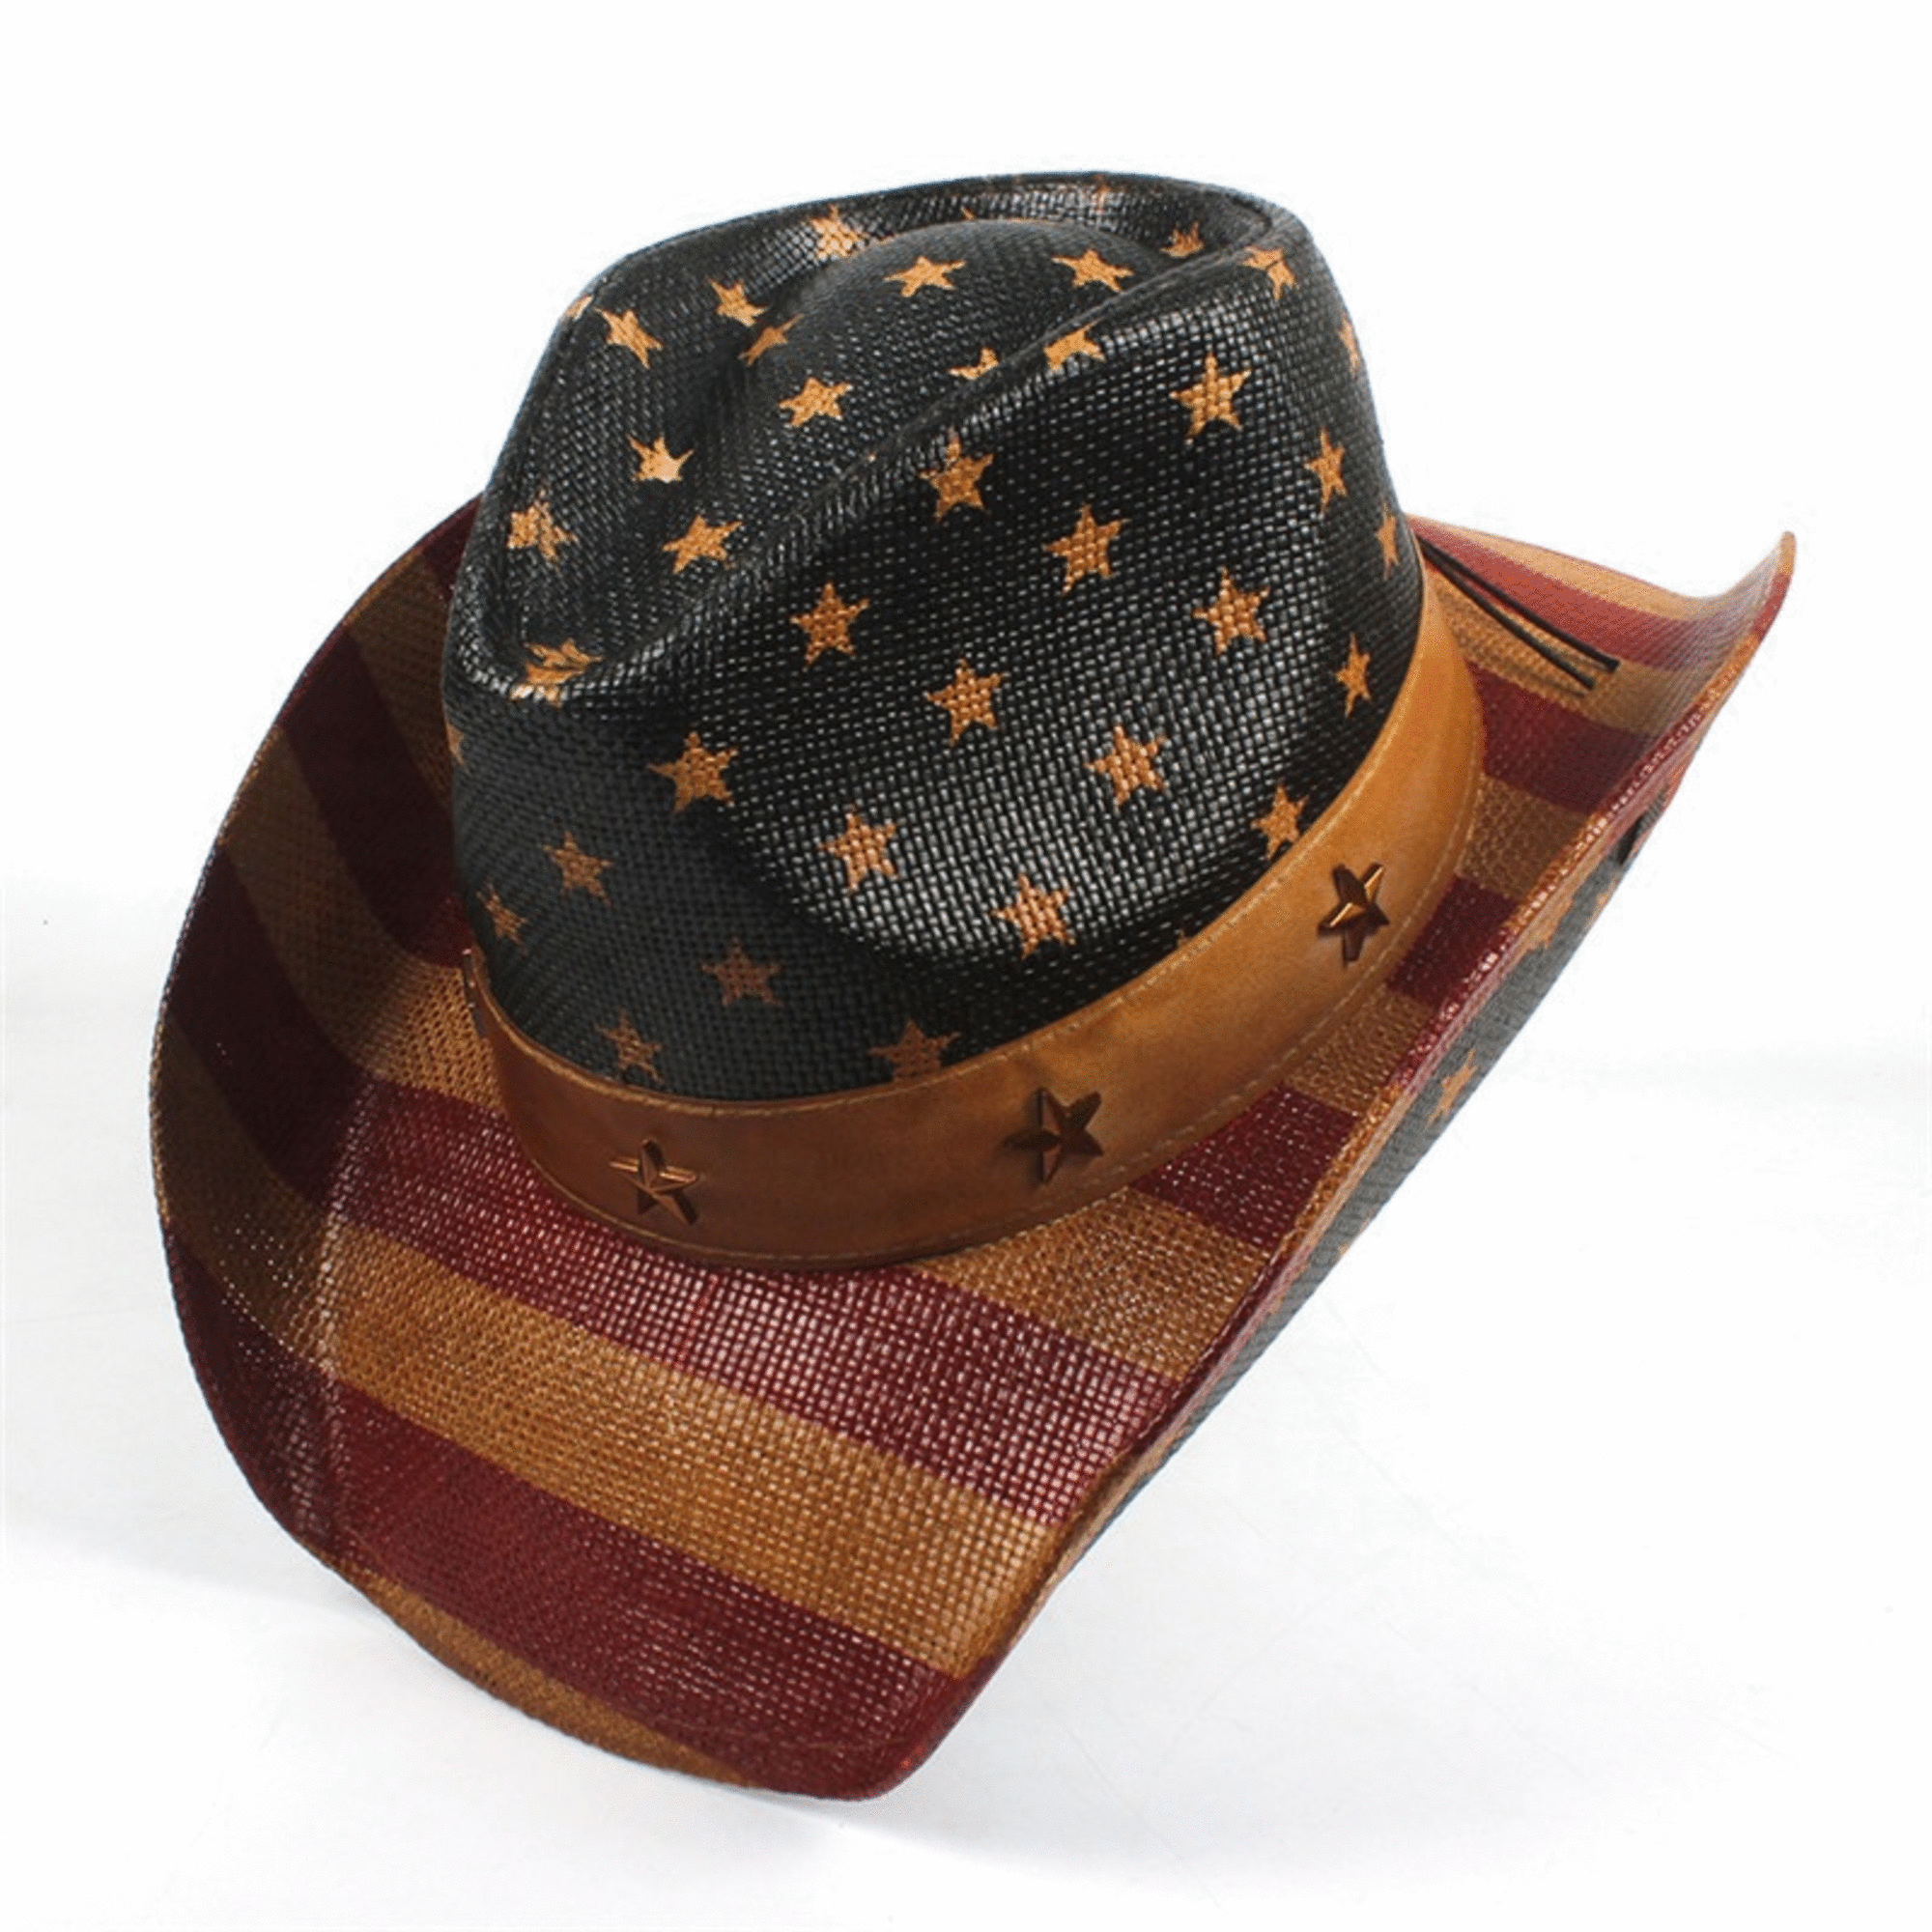 Cowboyhut mit amerikanischer Flagge